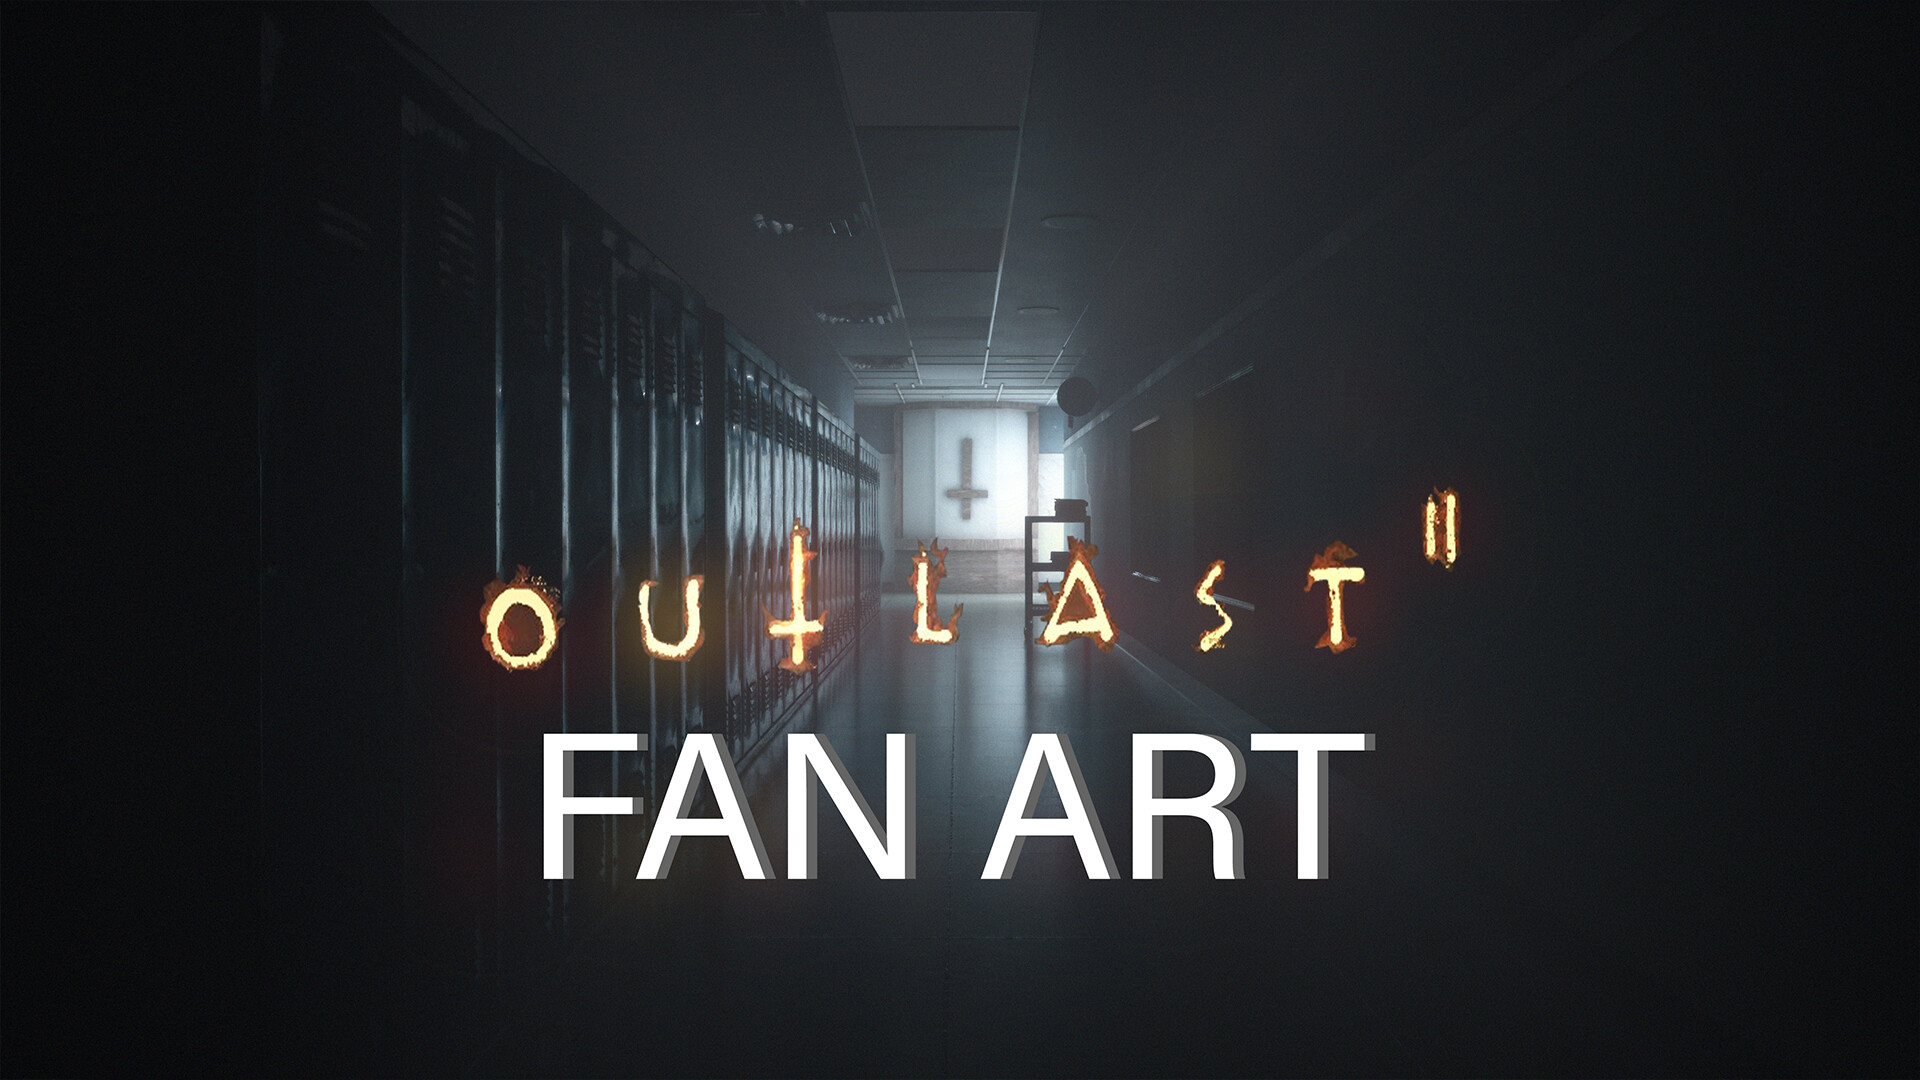 ArtStation - Outlast 2 PC Full Game ^^nosTEAM^^RO License Key farrzebug